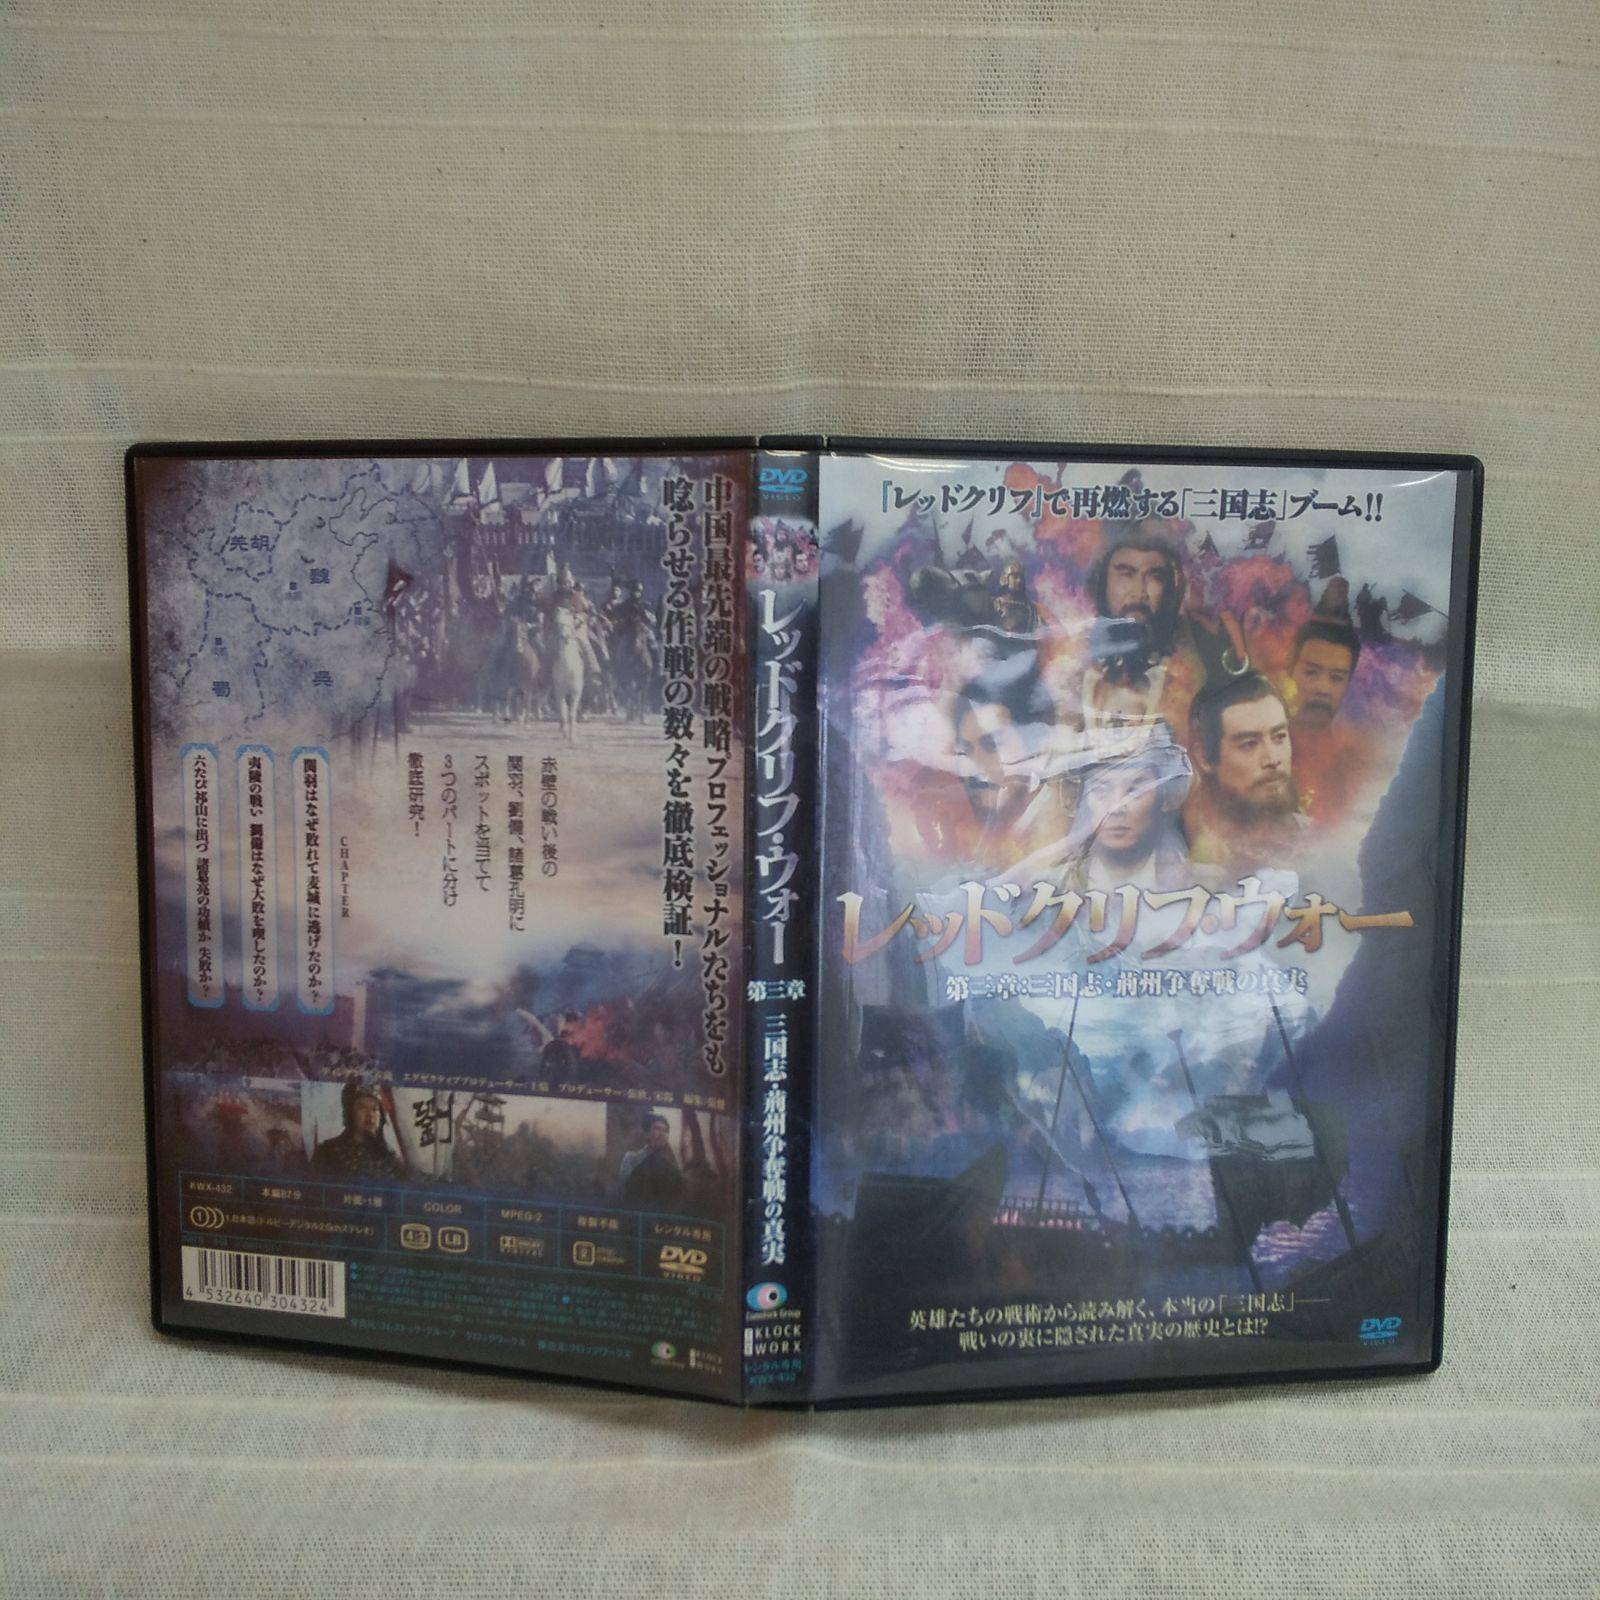 レッドクリフ・ウォー 第三章:三国志・荊州争奪戦の真実 レンタル専用 中古 DVD ケース付き